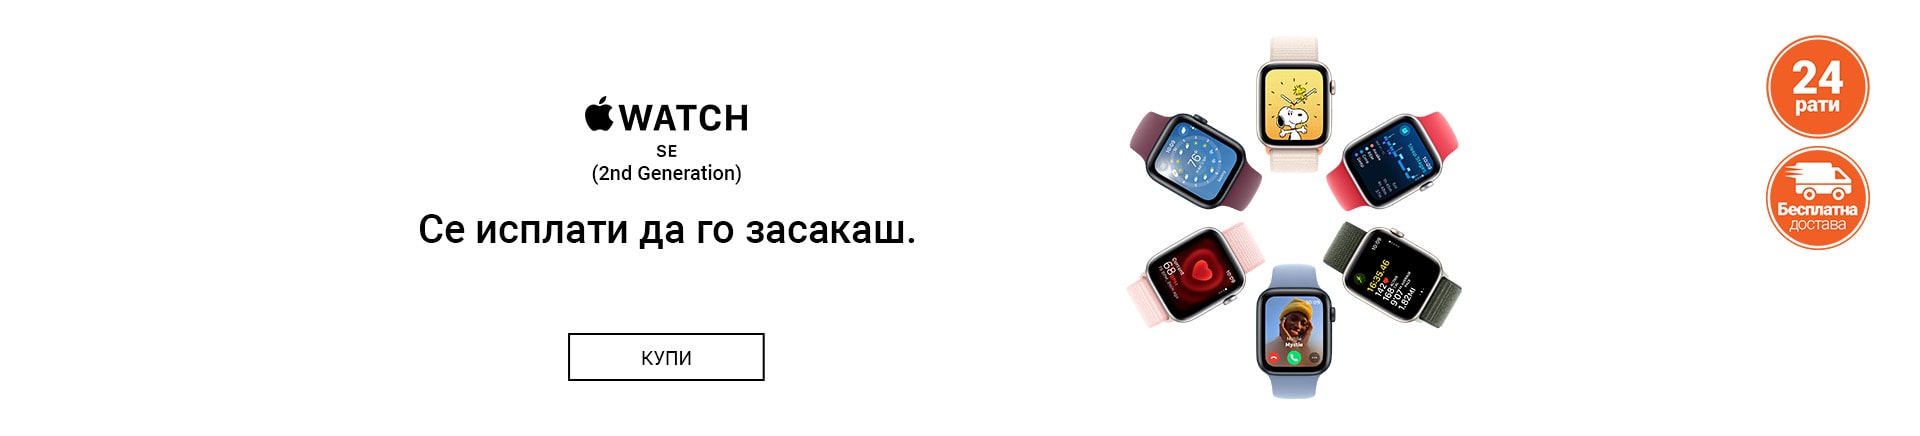 MK~Apple Watch SE2 TABLET 768 X 436-min.jpg